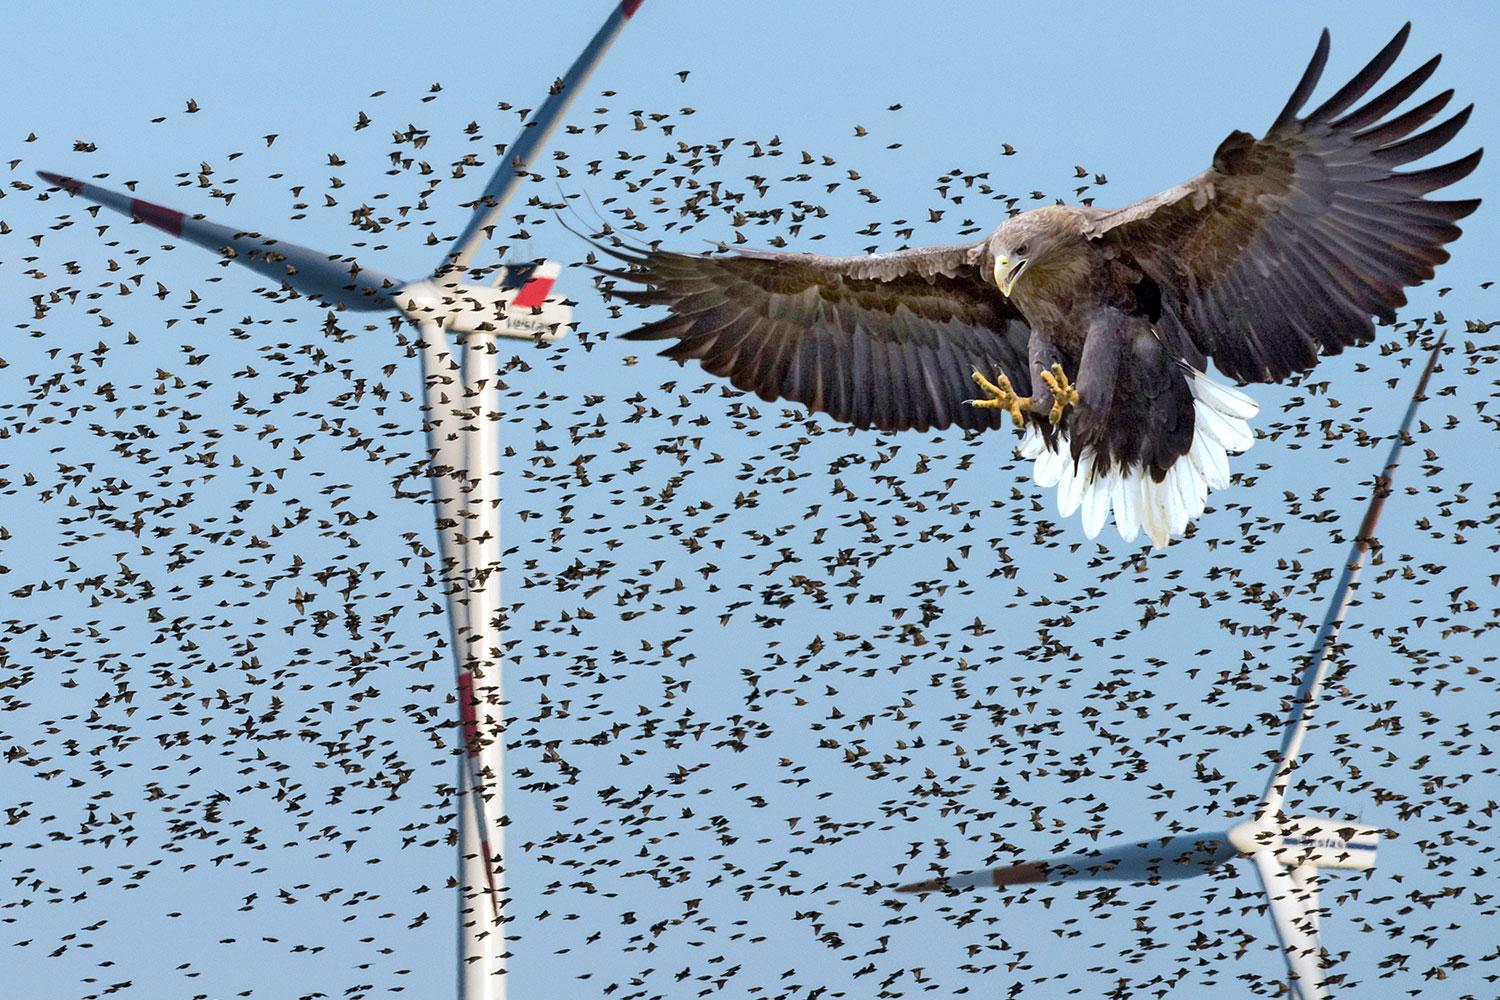 طيور مهاجرة تحلق بالقرب من توربينات الرياح - الصورة من صحيفة ذا تايمز